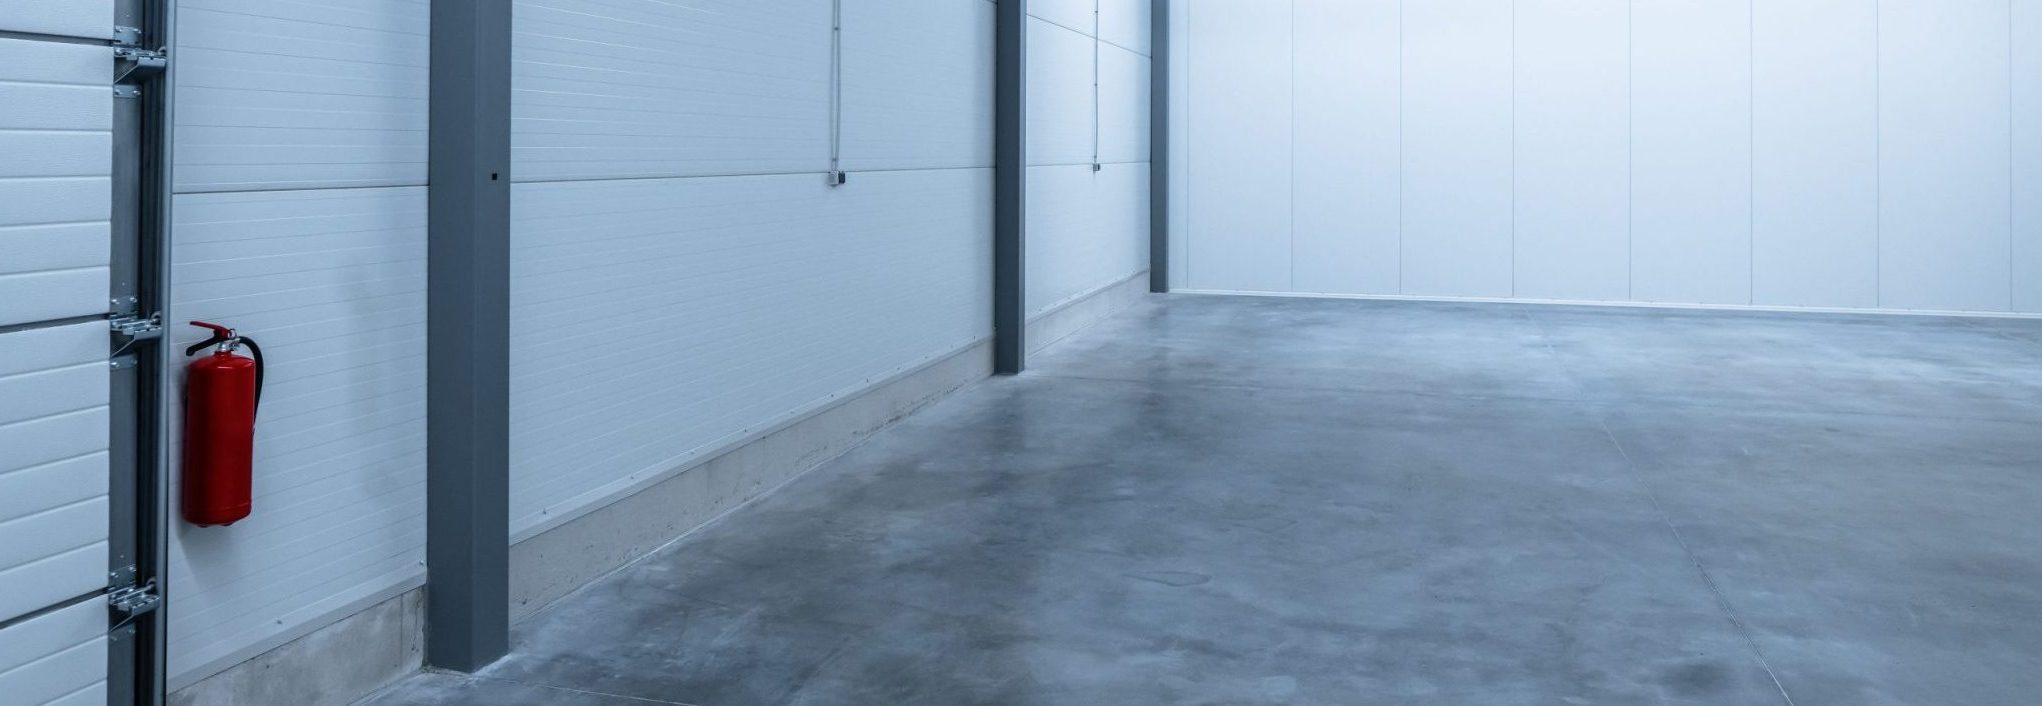 Pavecoat cure & seal concrete floor, nutech paint